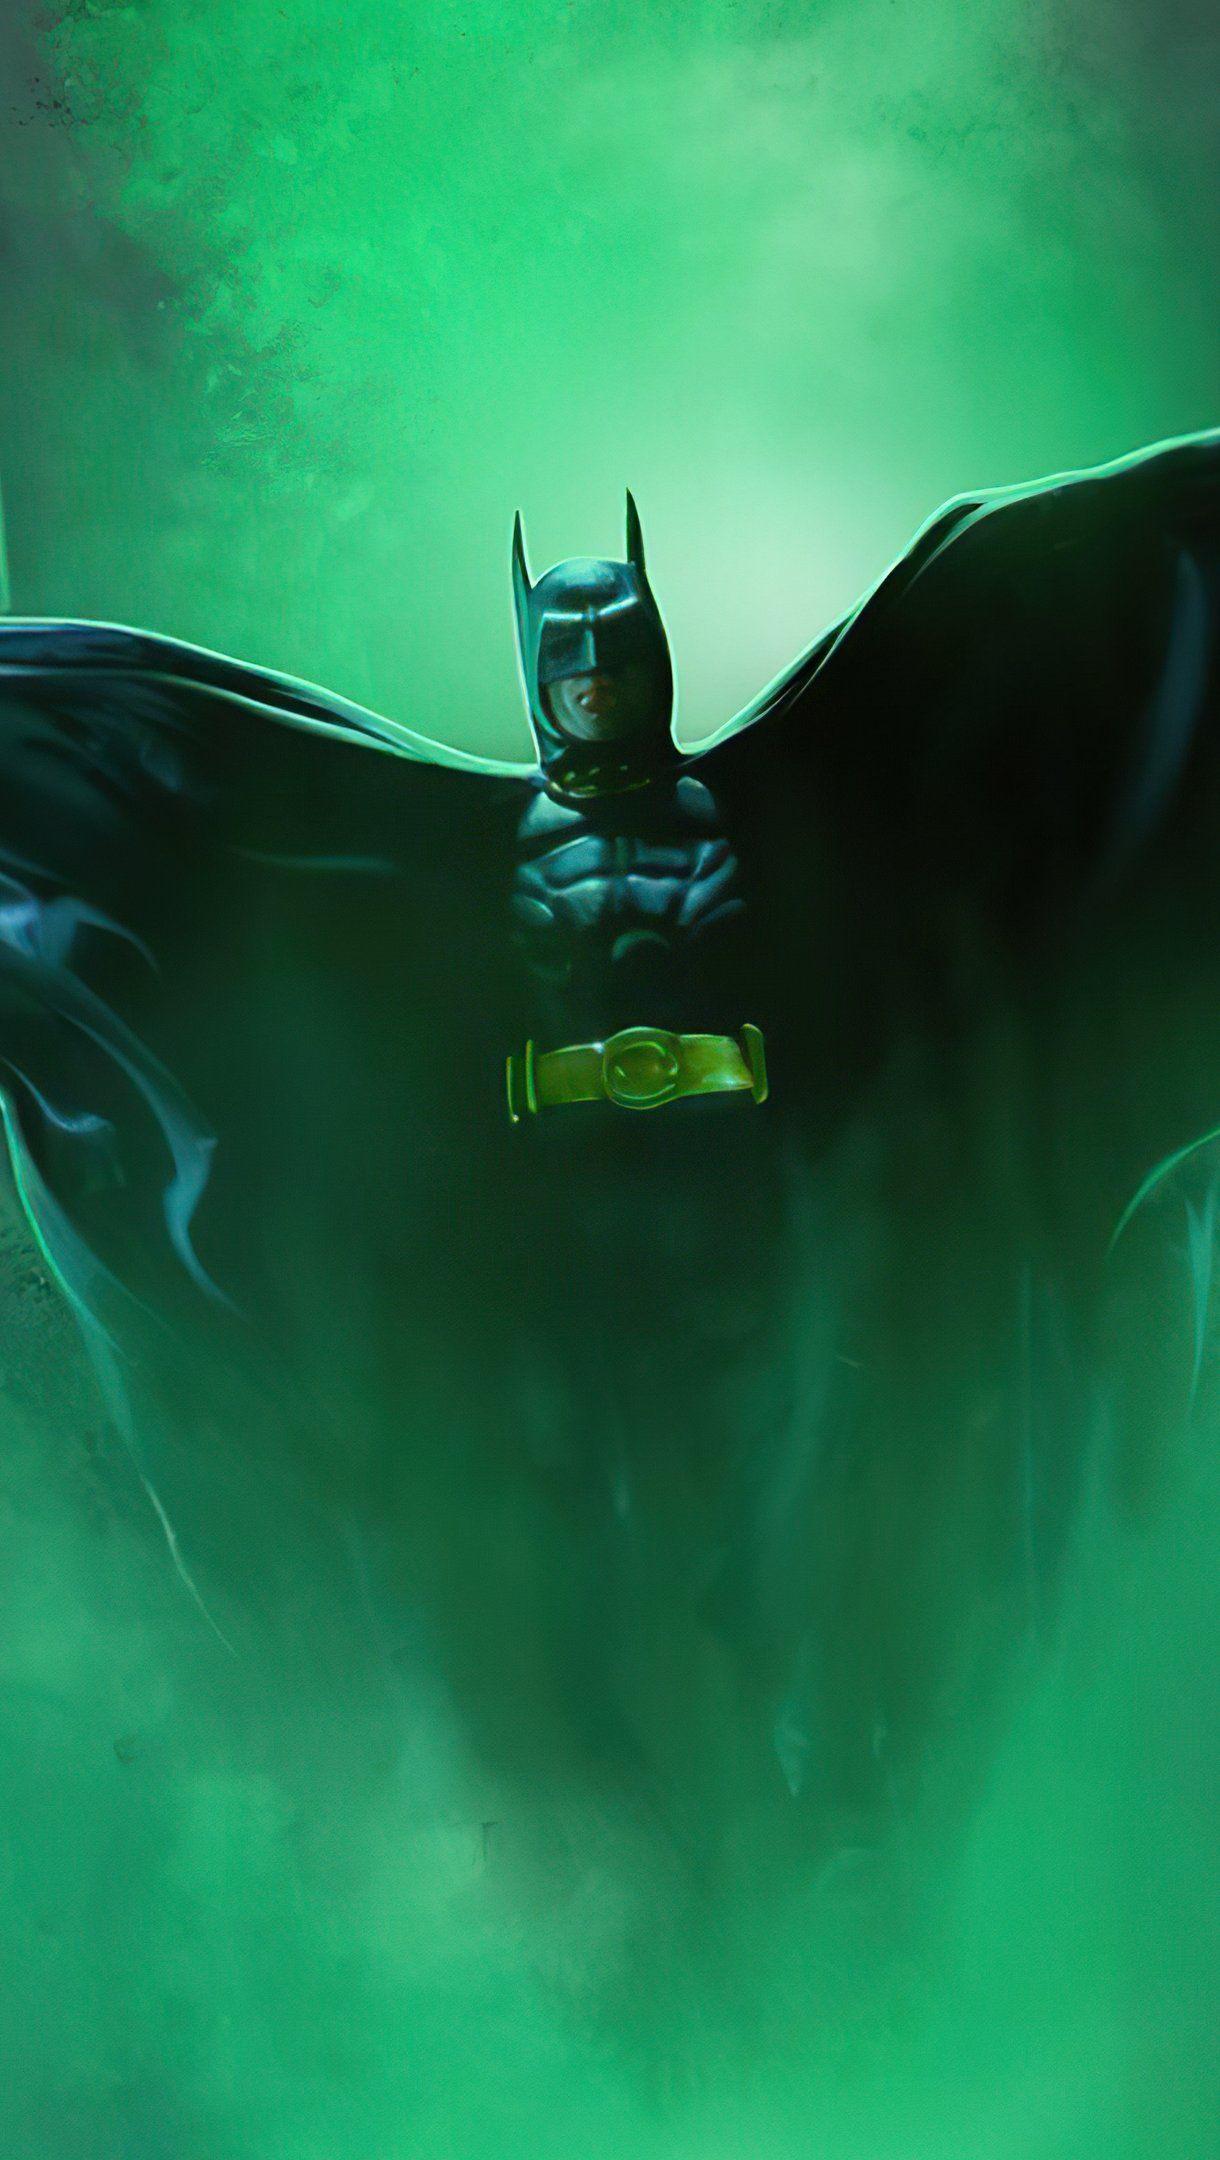 Michael Keaton as Batman Fanart Wallpaper 4k Ultra HD